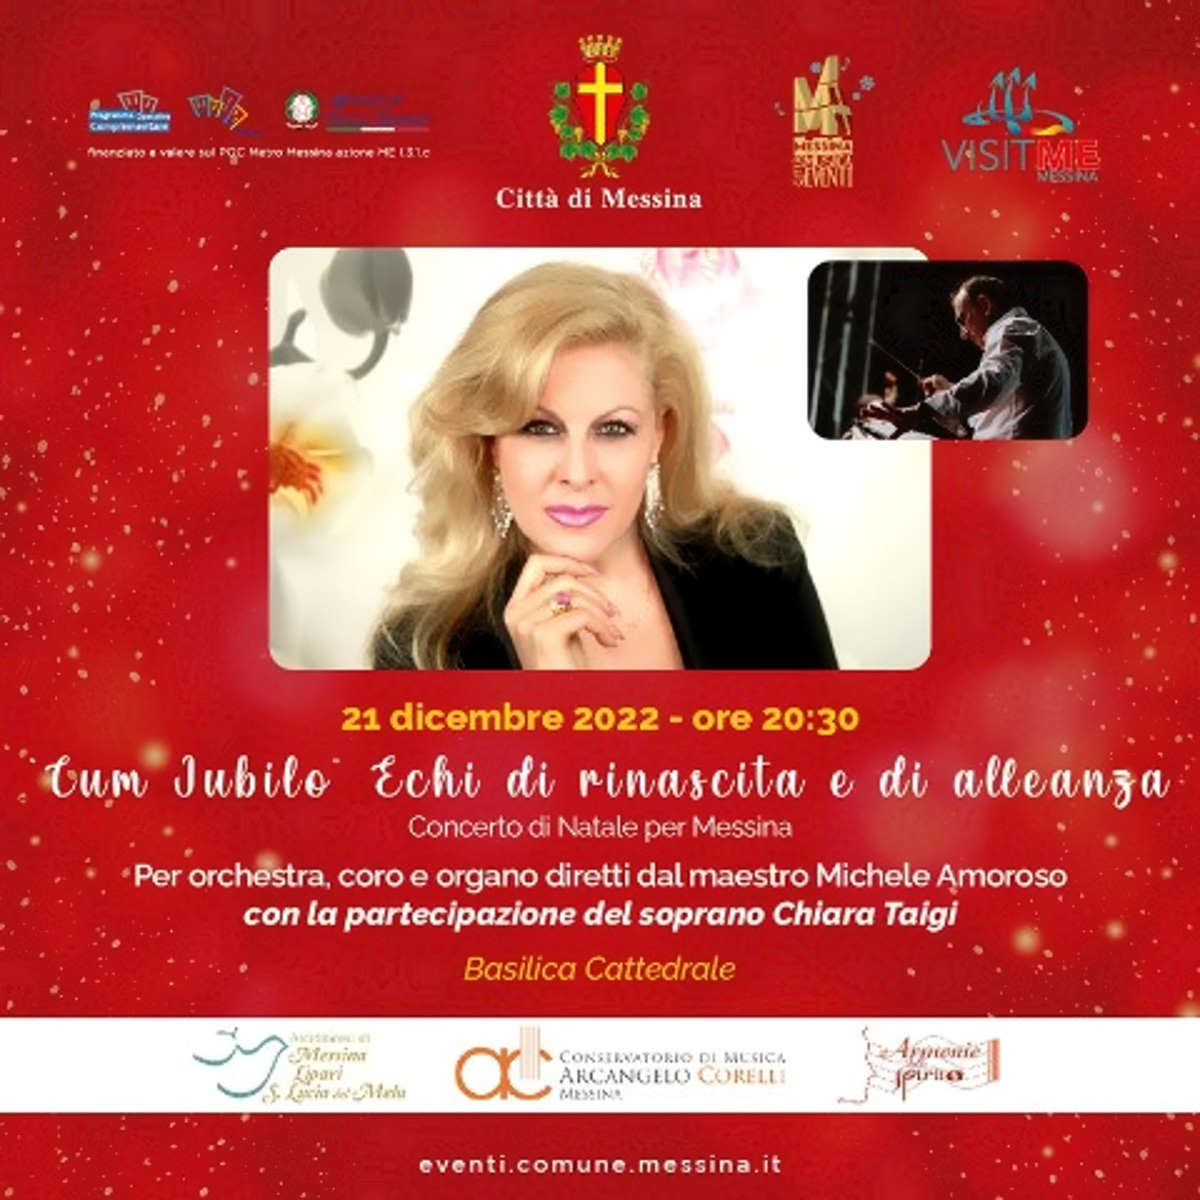 Chiara Taigi in concerto al duomo di Messina - 21 dicembre 2022 ore 20:30